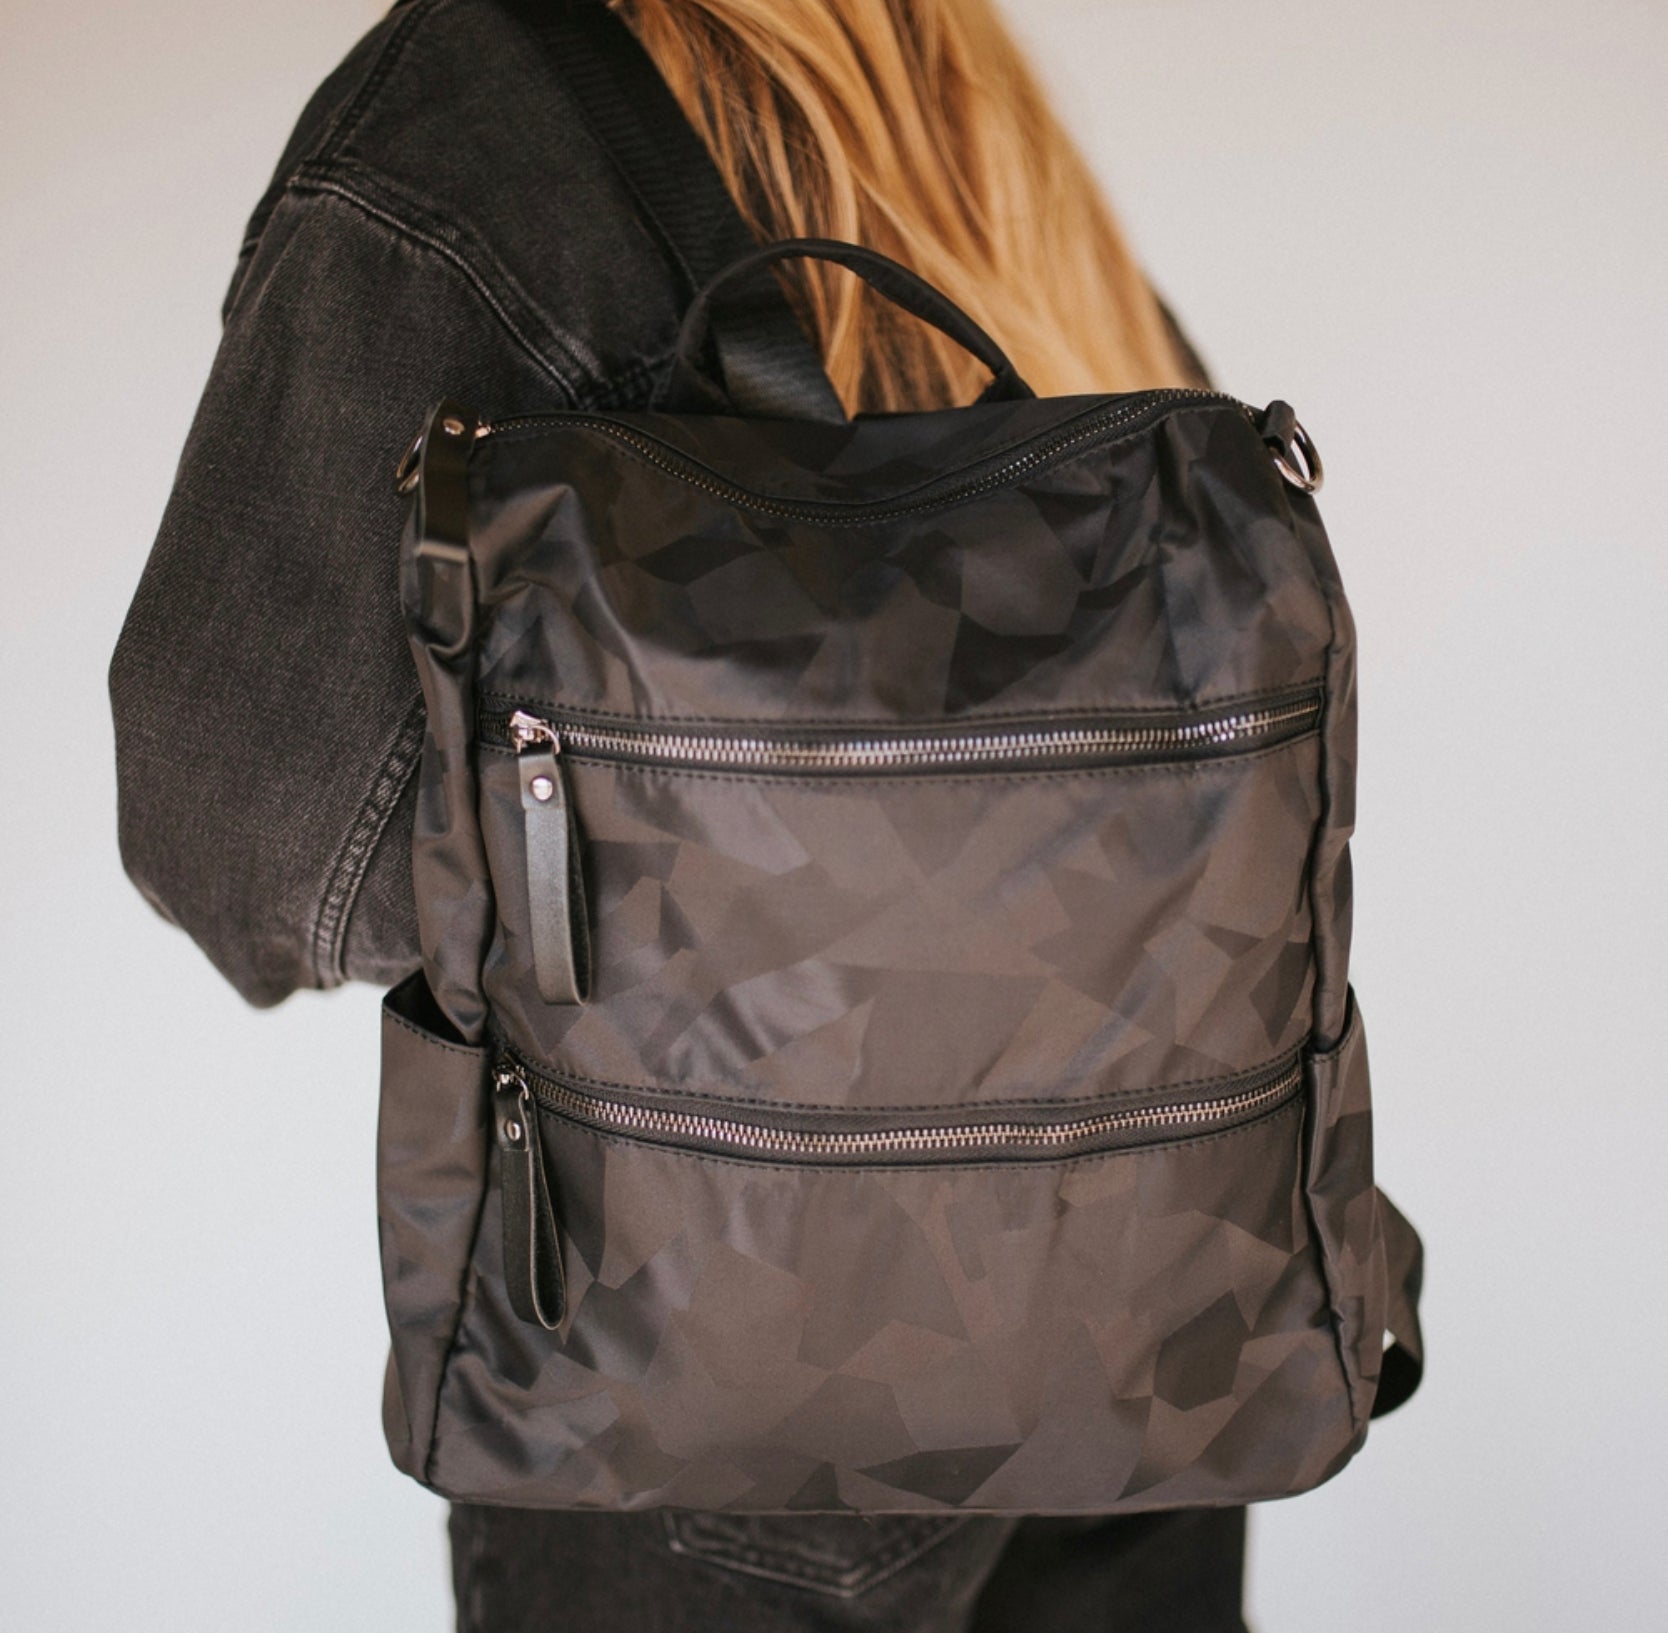 Nori Backpack